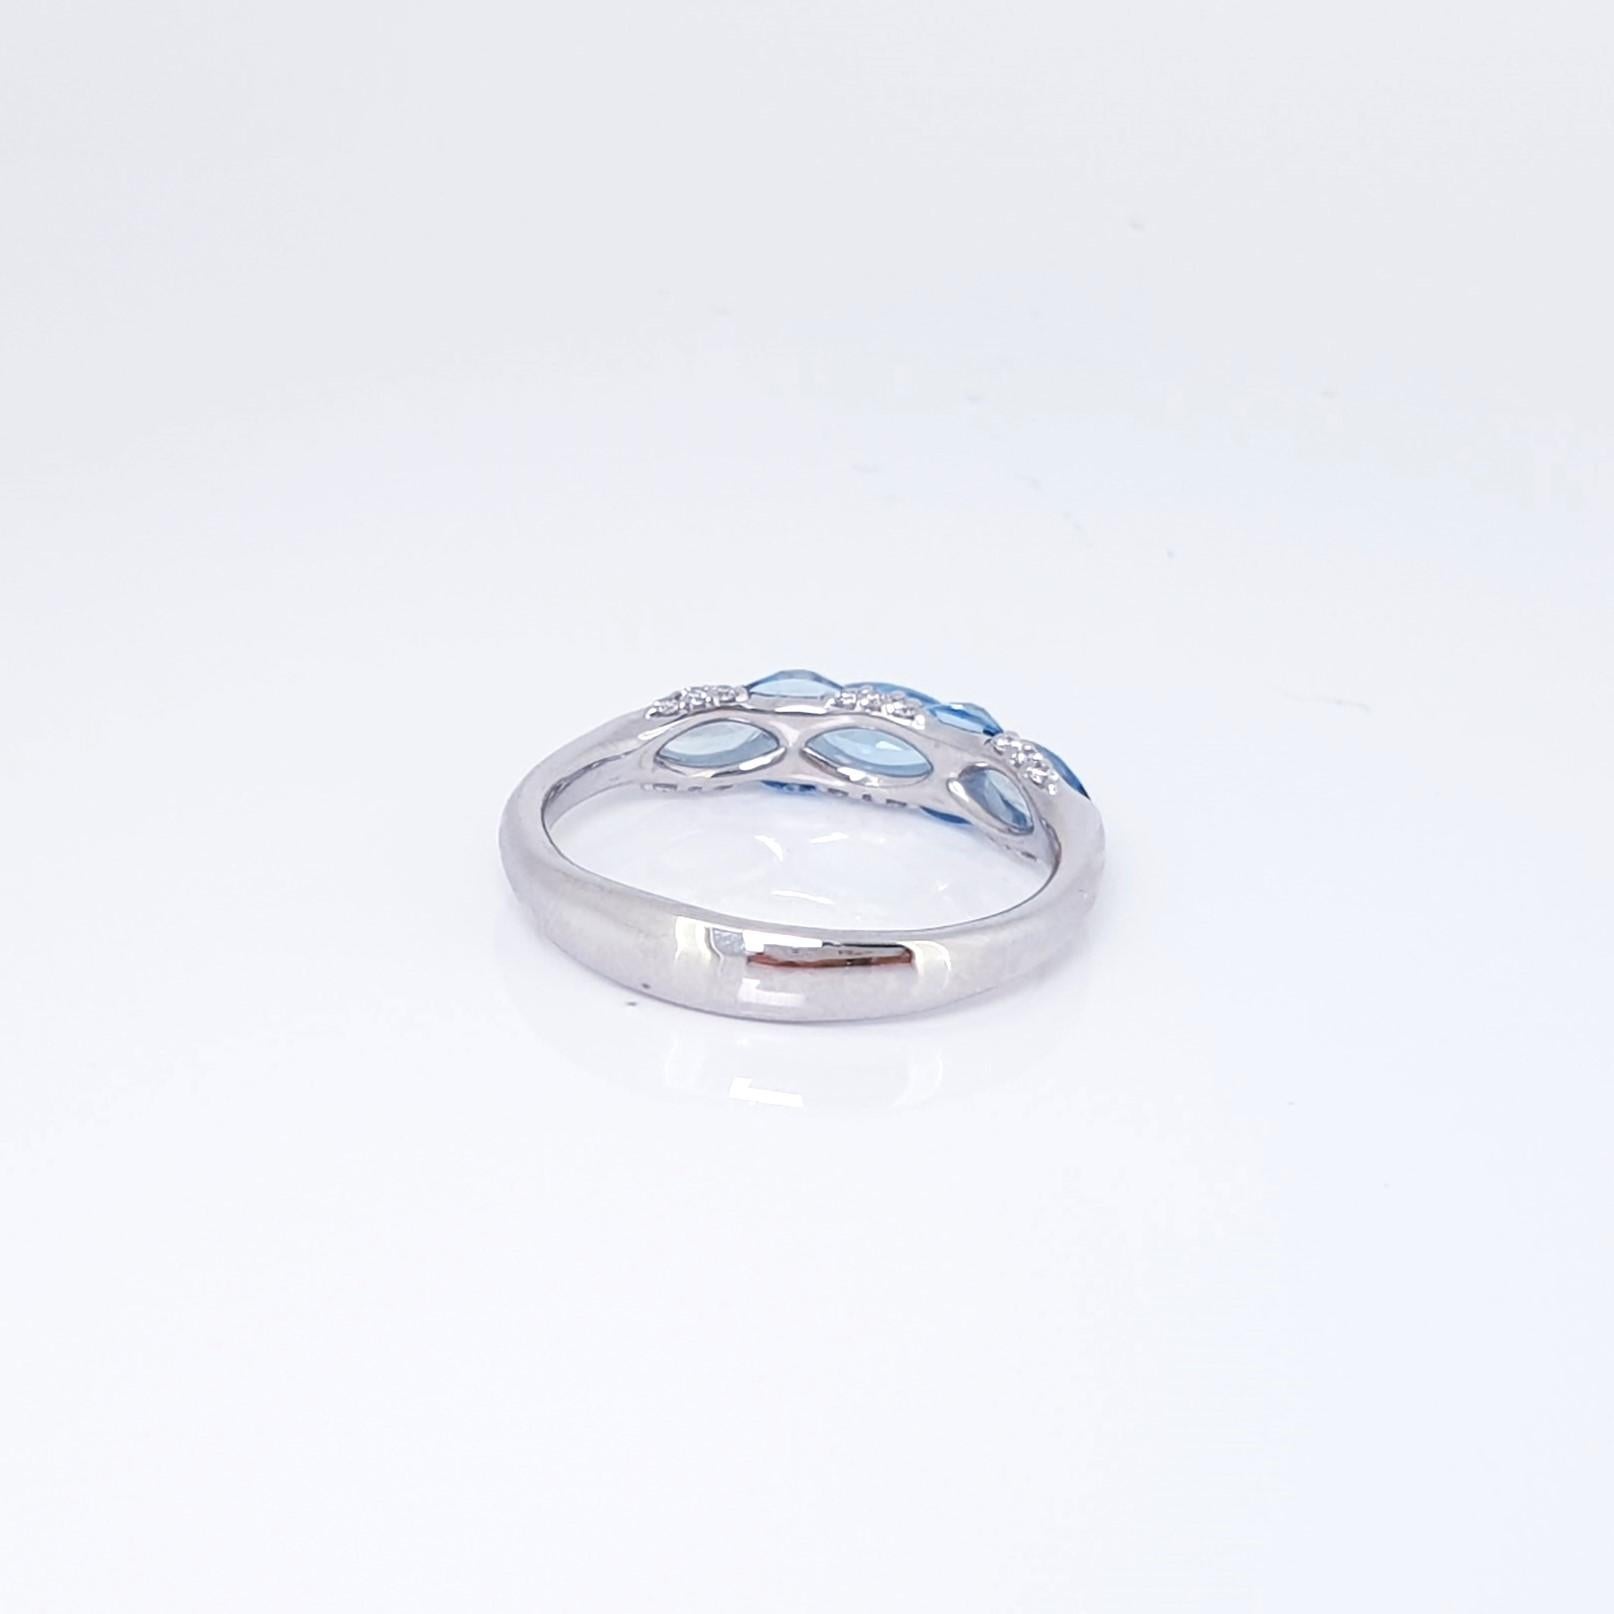 Contemporary Customised Santa Maria Aquamarine Diamond Ring, size 19.0mm diameter For Sale